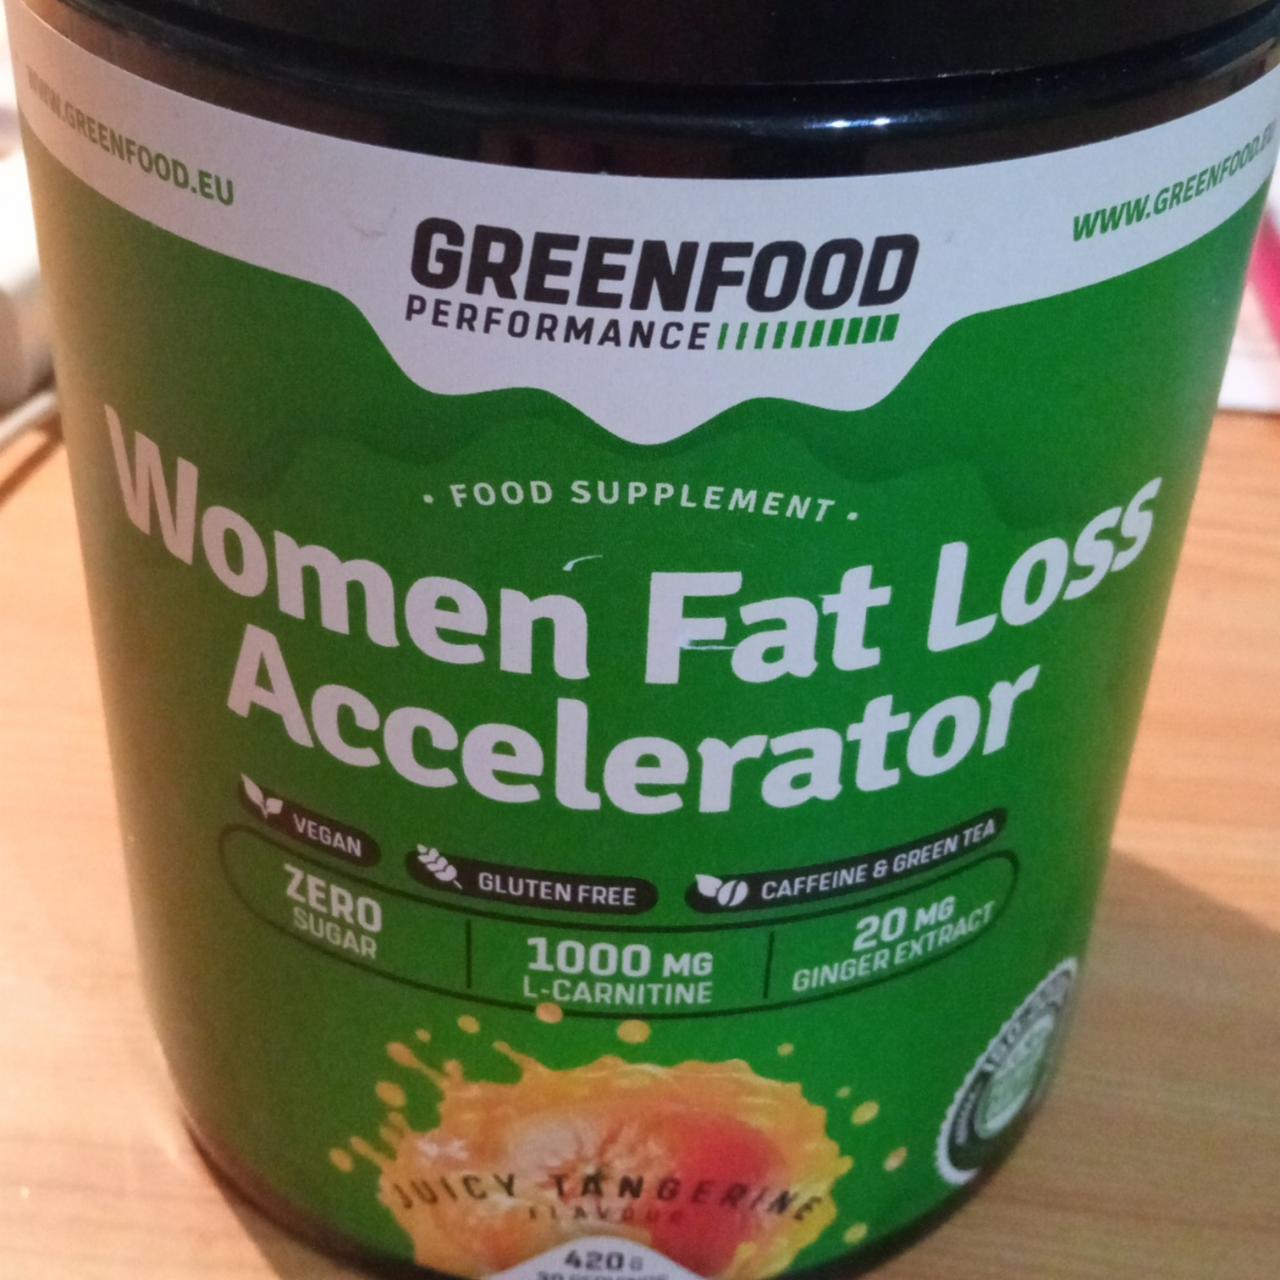 Fotografie - Women Fat Loss Accelerator Juicy Tangerine GreenFood Performance